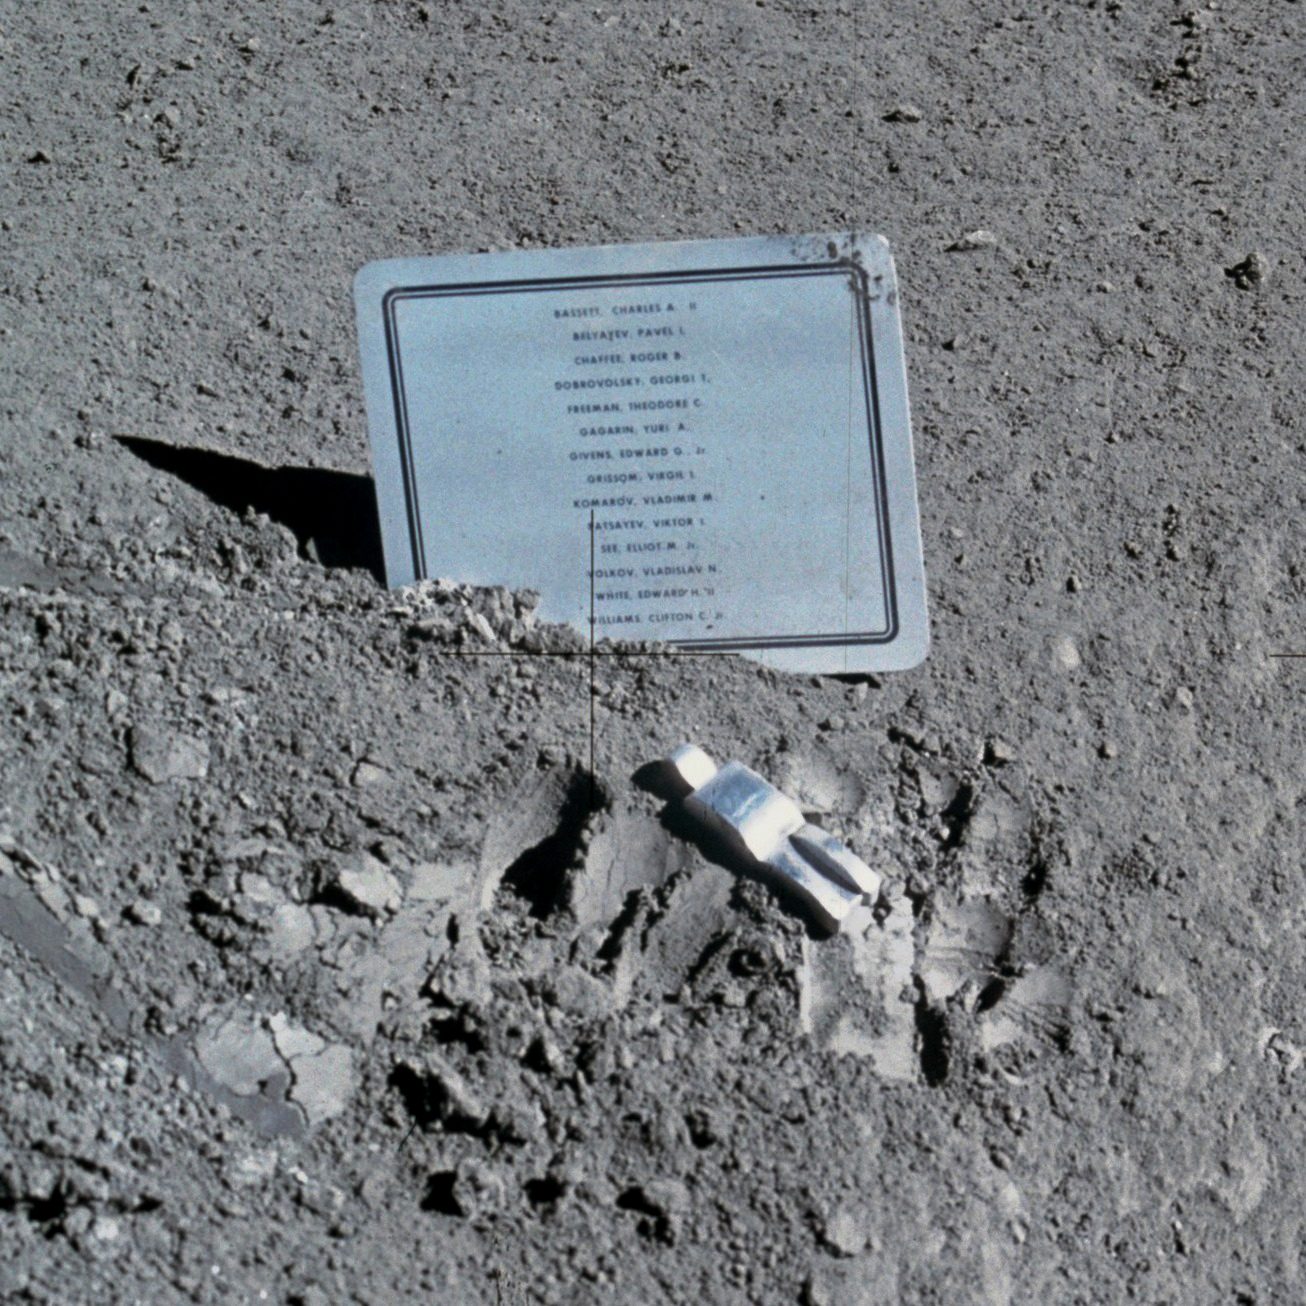 《倒下的宇航员》是人类留在月面的艺术品，纪念航天烈士的英灵